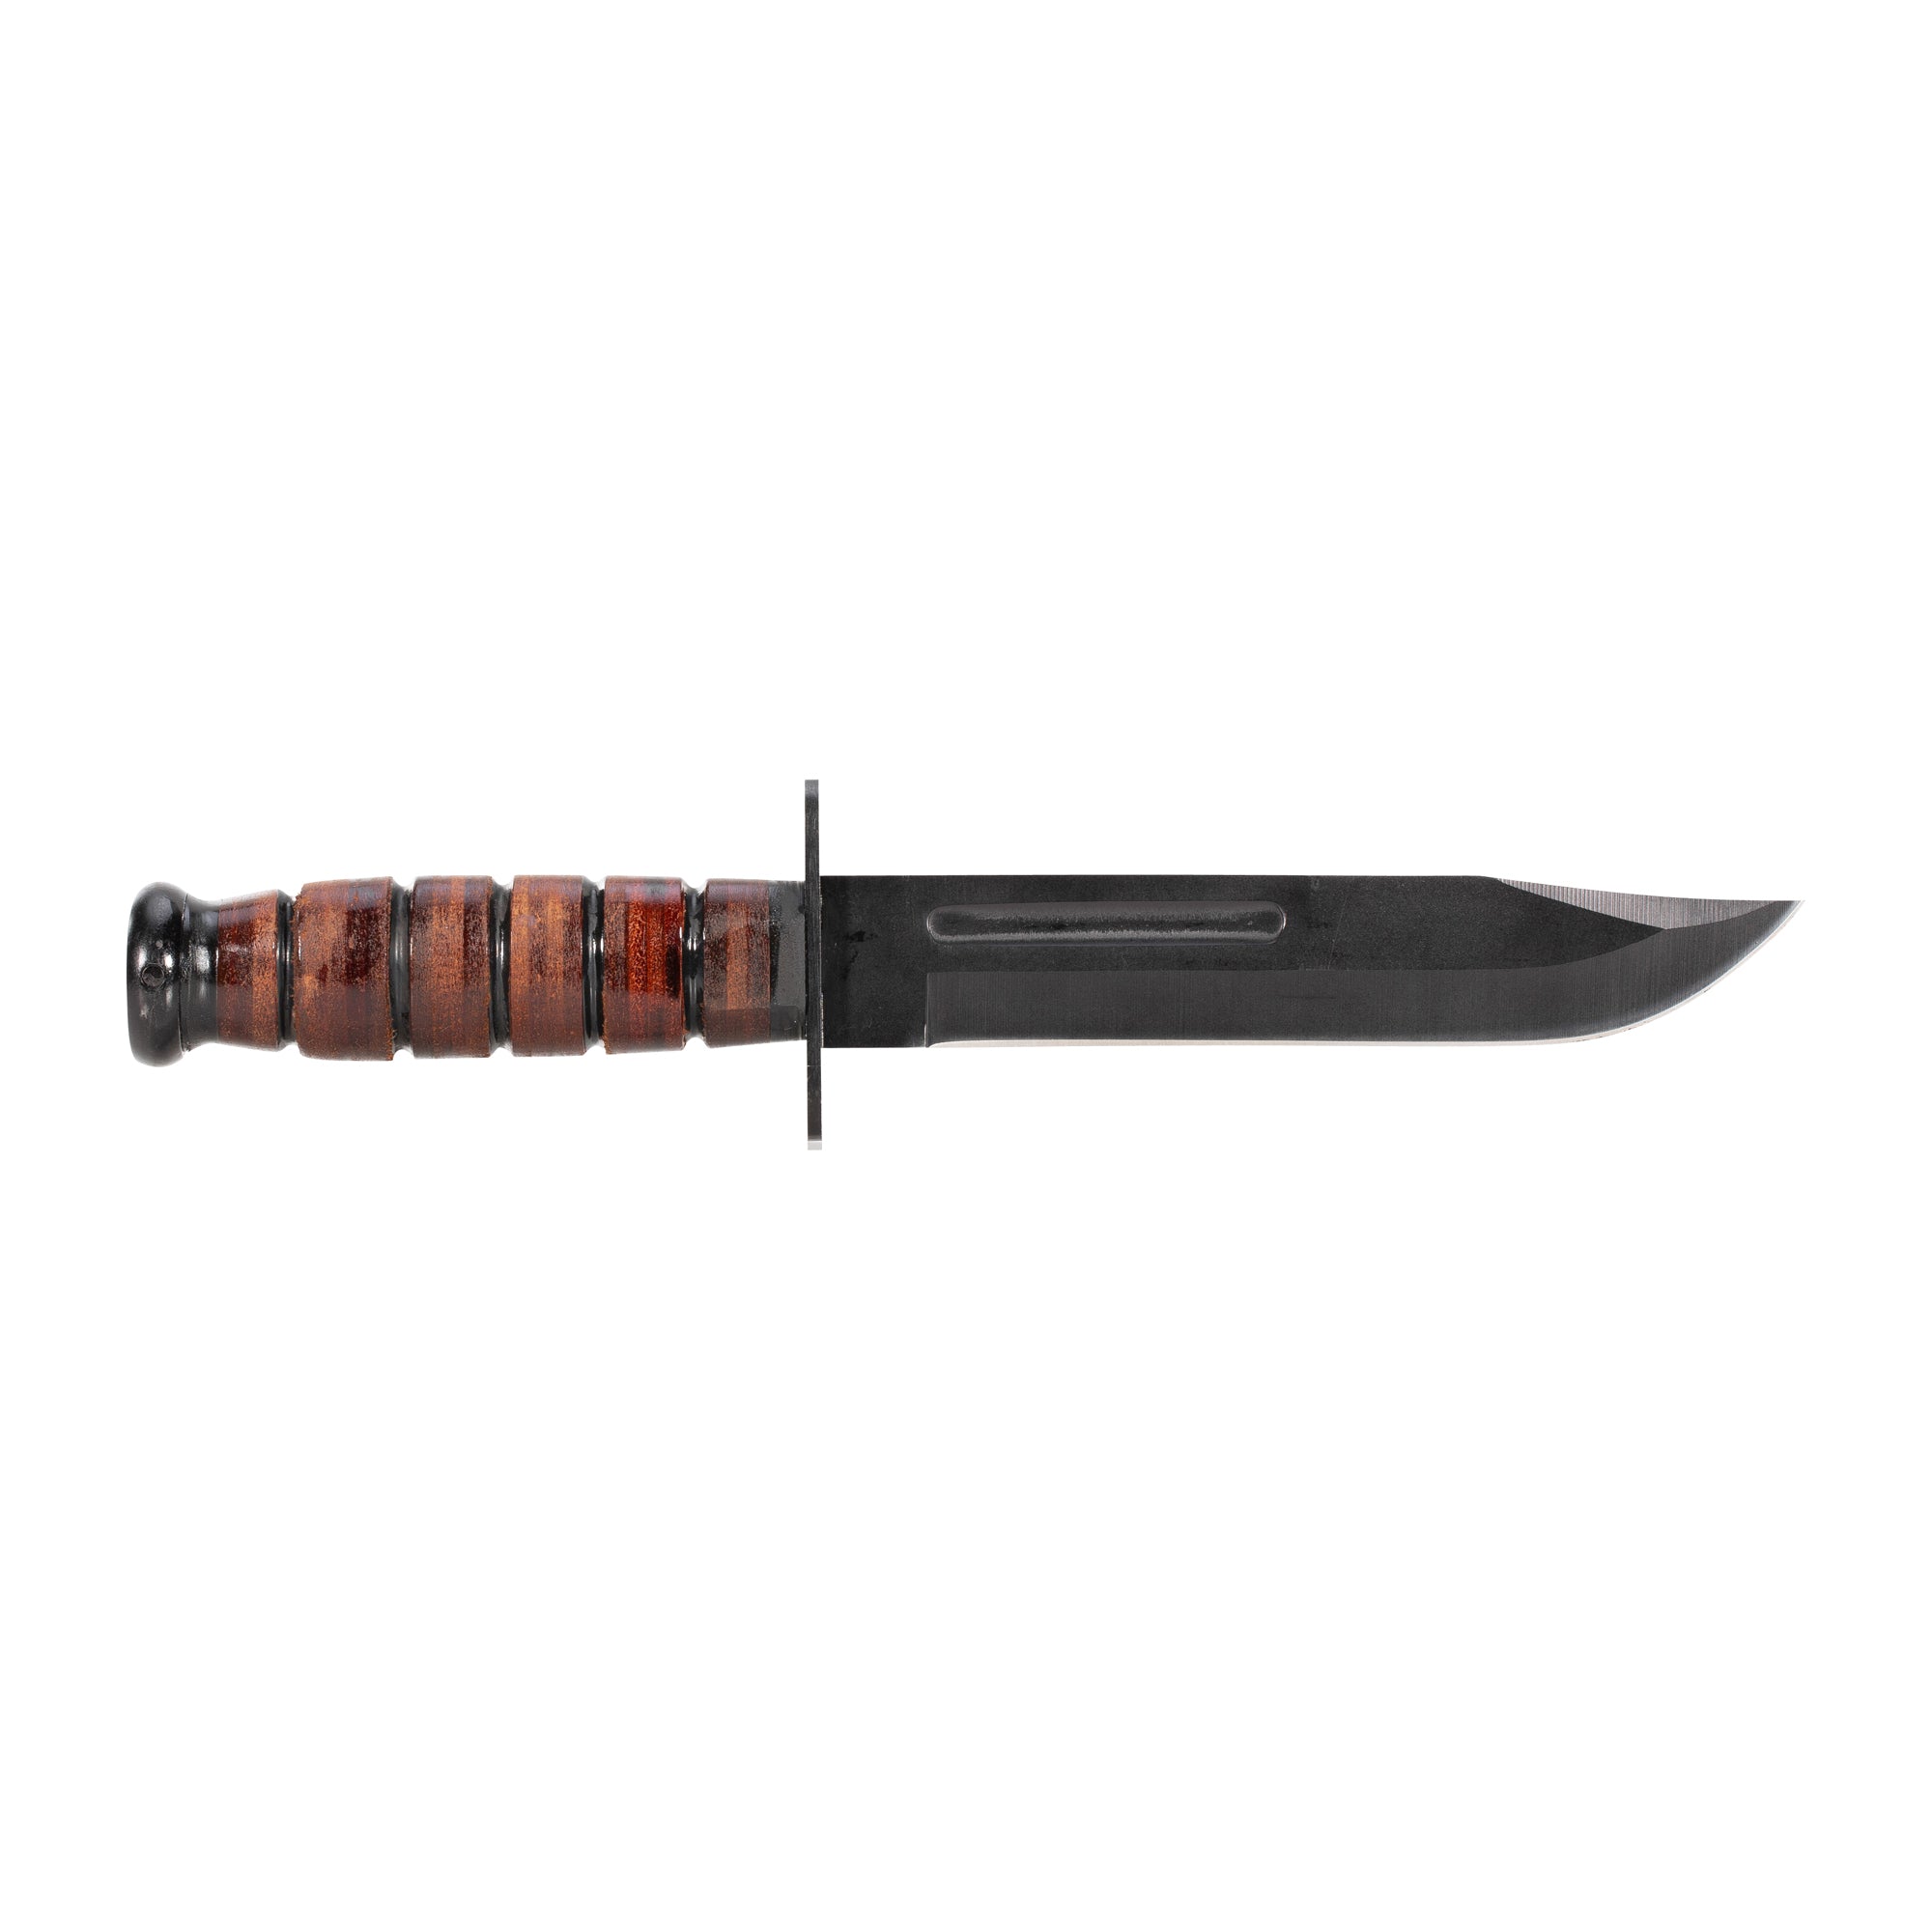 USMC Kampfmesser mit Ledergriff und Scheide braun schwarz